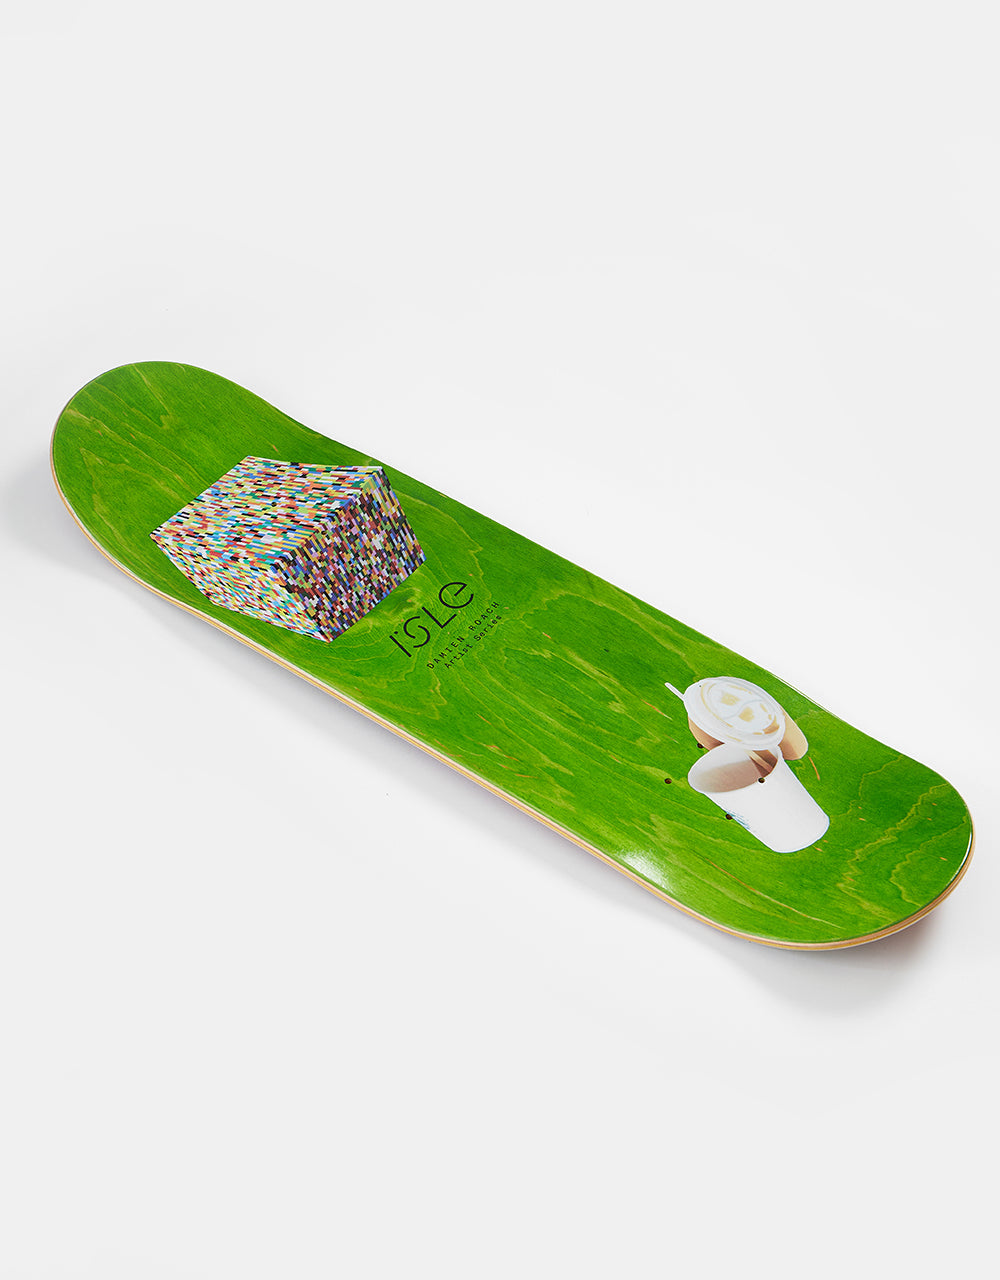 Isle x Damina Roach Arnold DM I Skateboard Deck - 8.5"